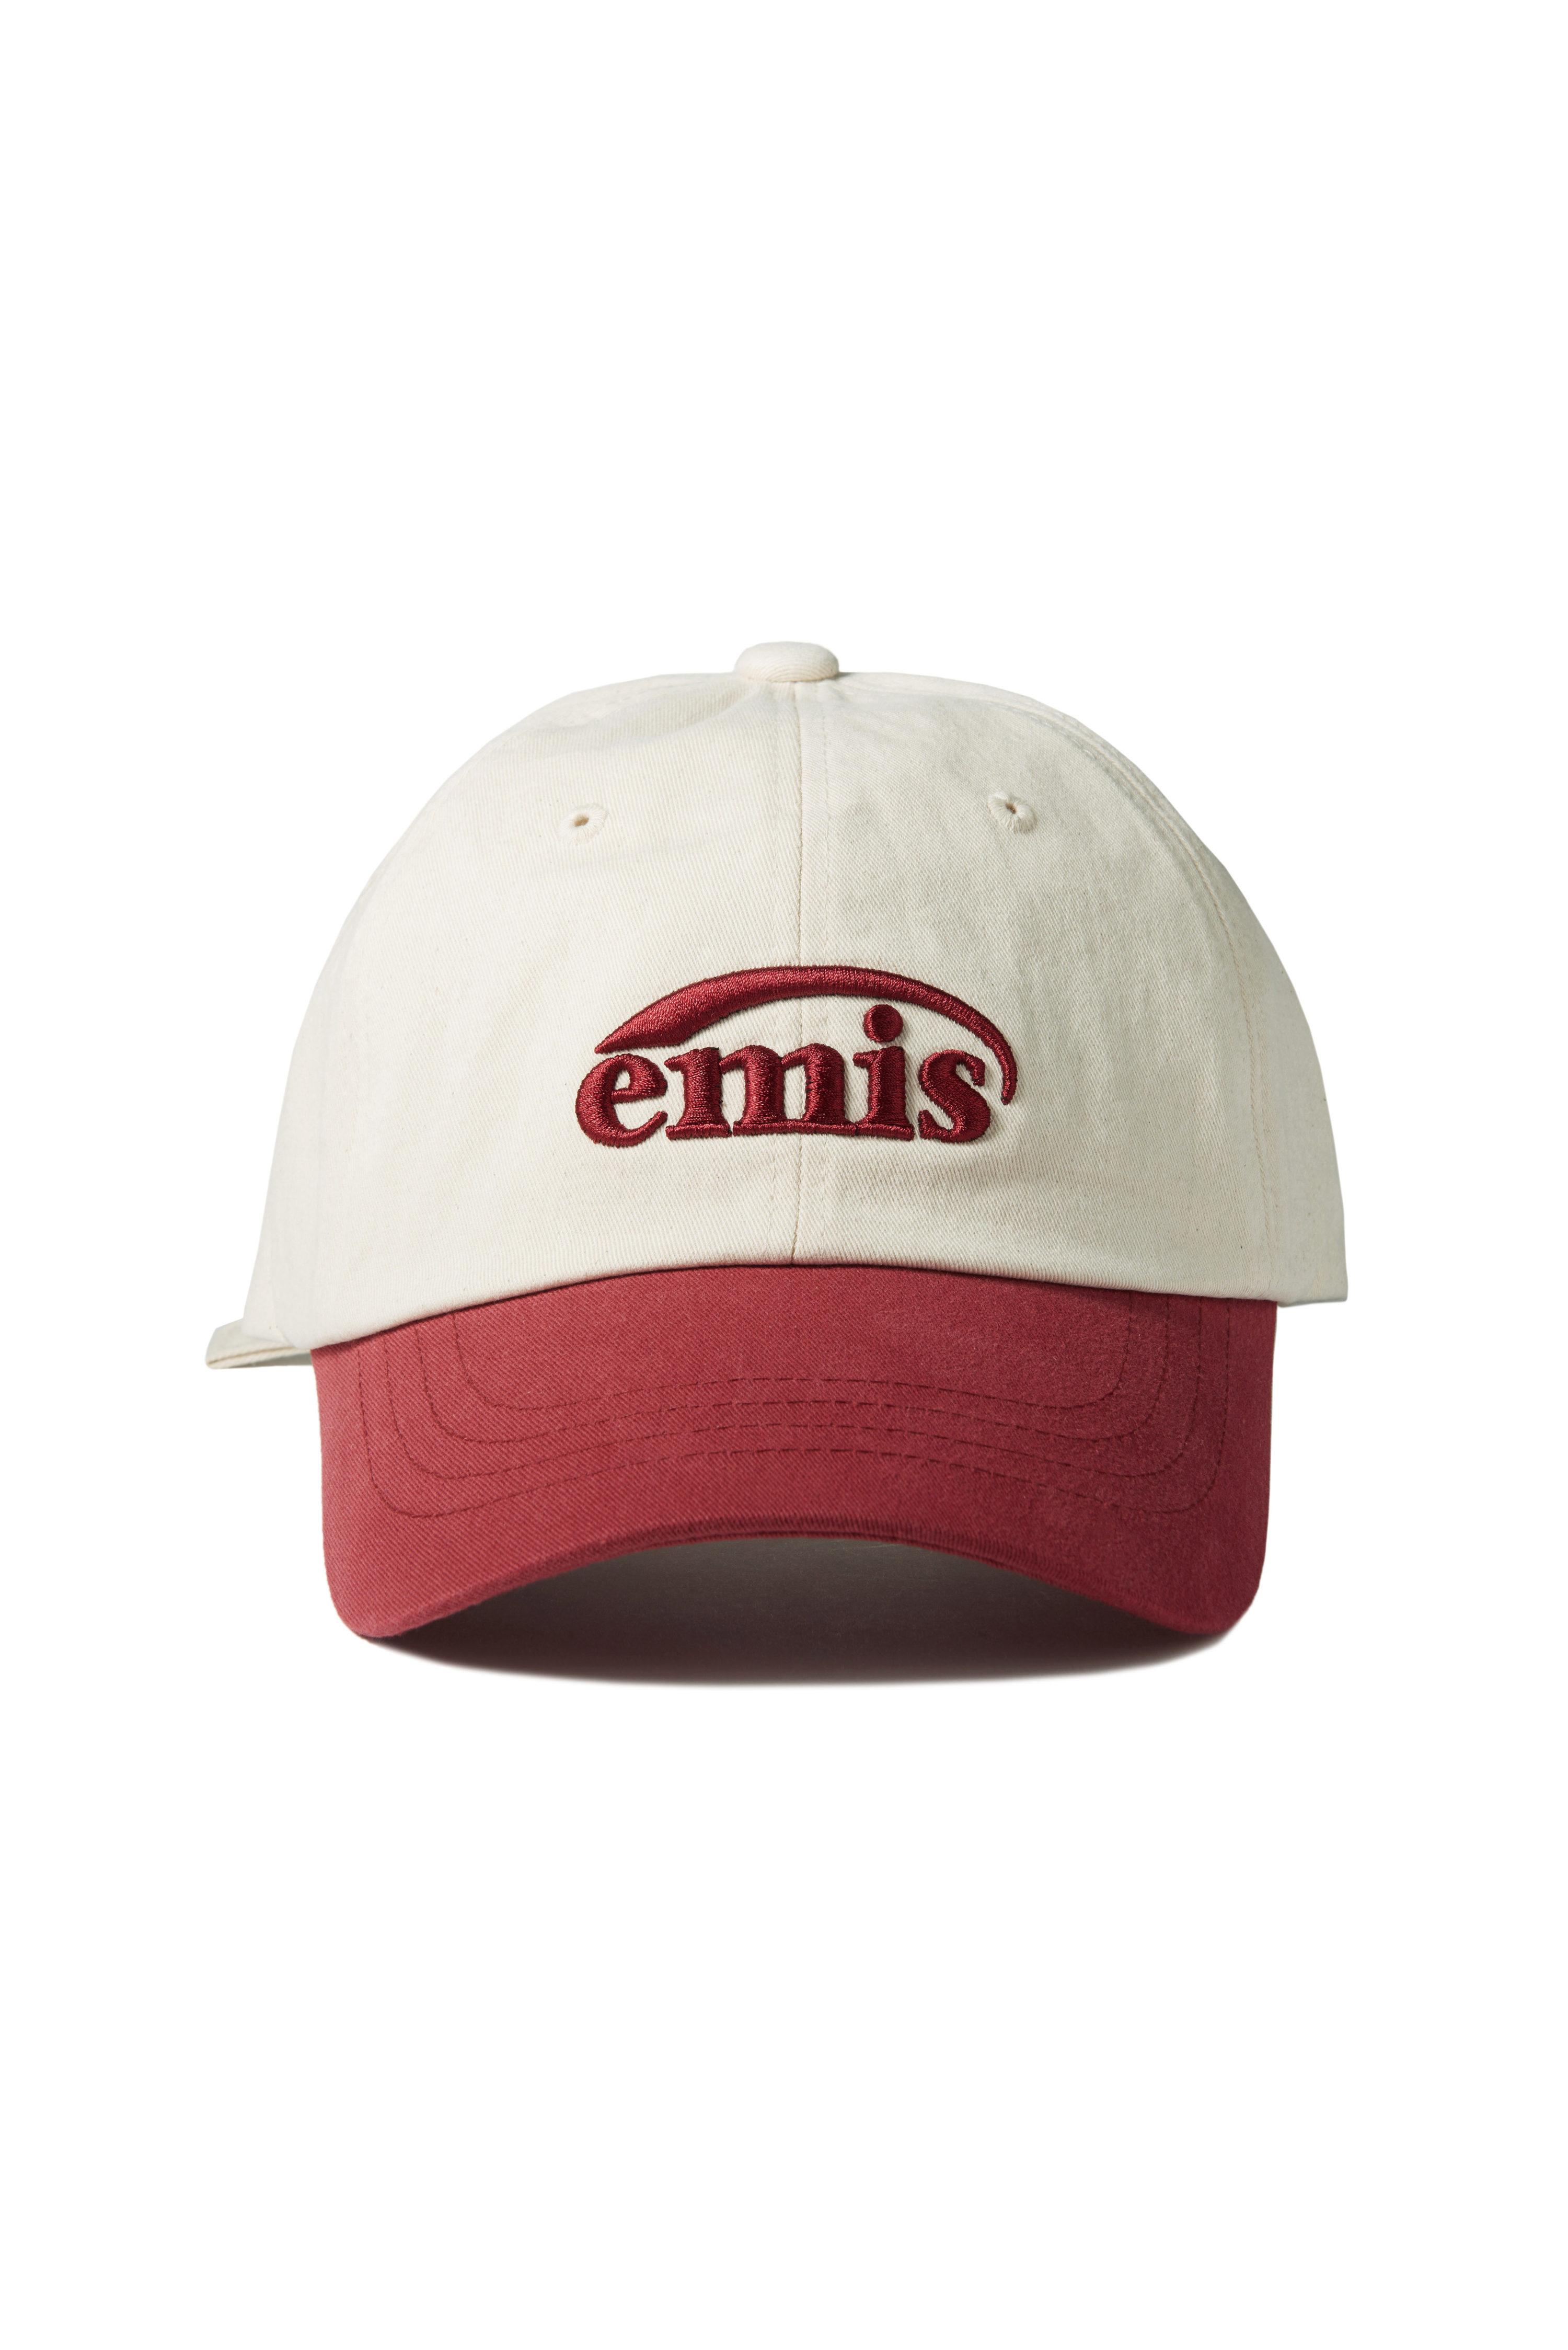 ❗🇰🇷韓國正版❗ emis 帽子 EMIS字母刺繡 新LOGO 休閒可調節棒球帽 （3色可選）